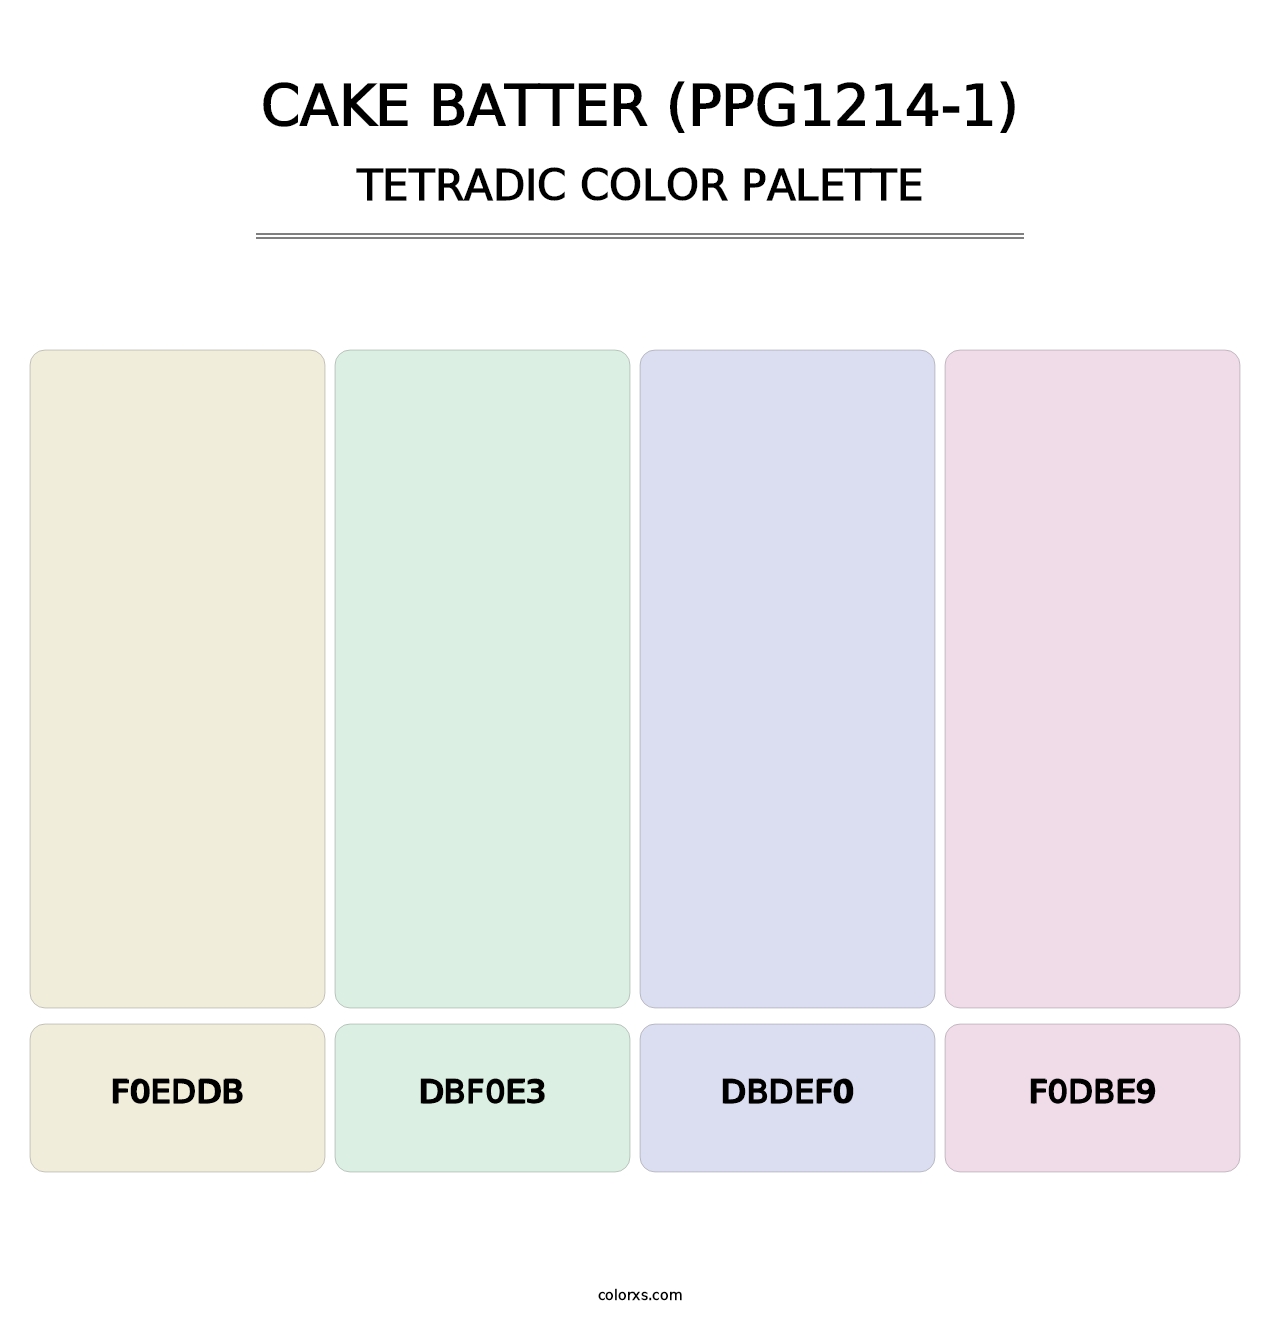 Cake Batter (PPG1214-1) - Tetradic Color Palette